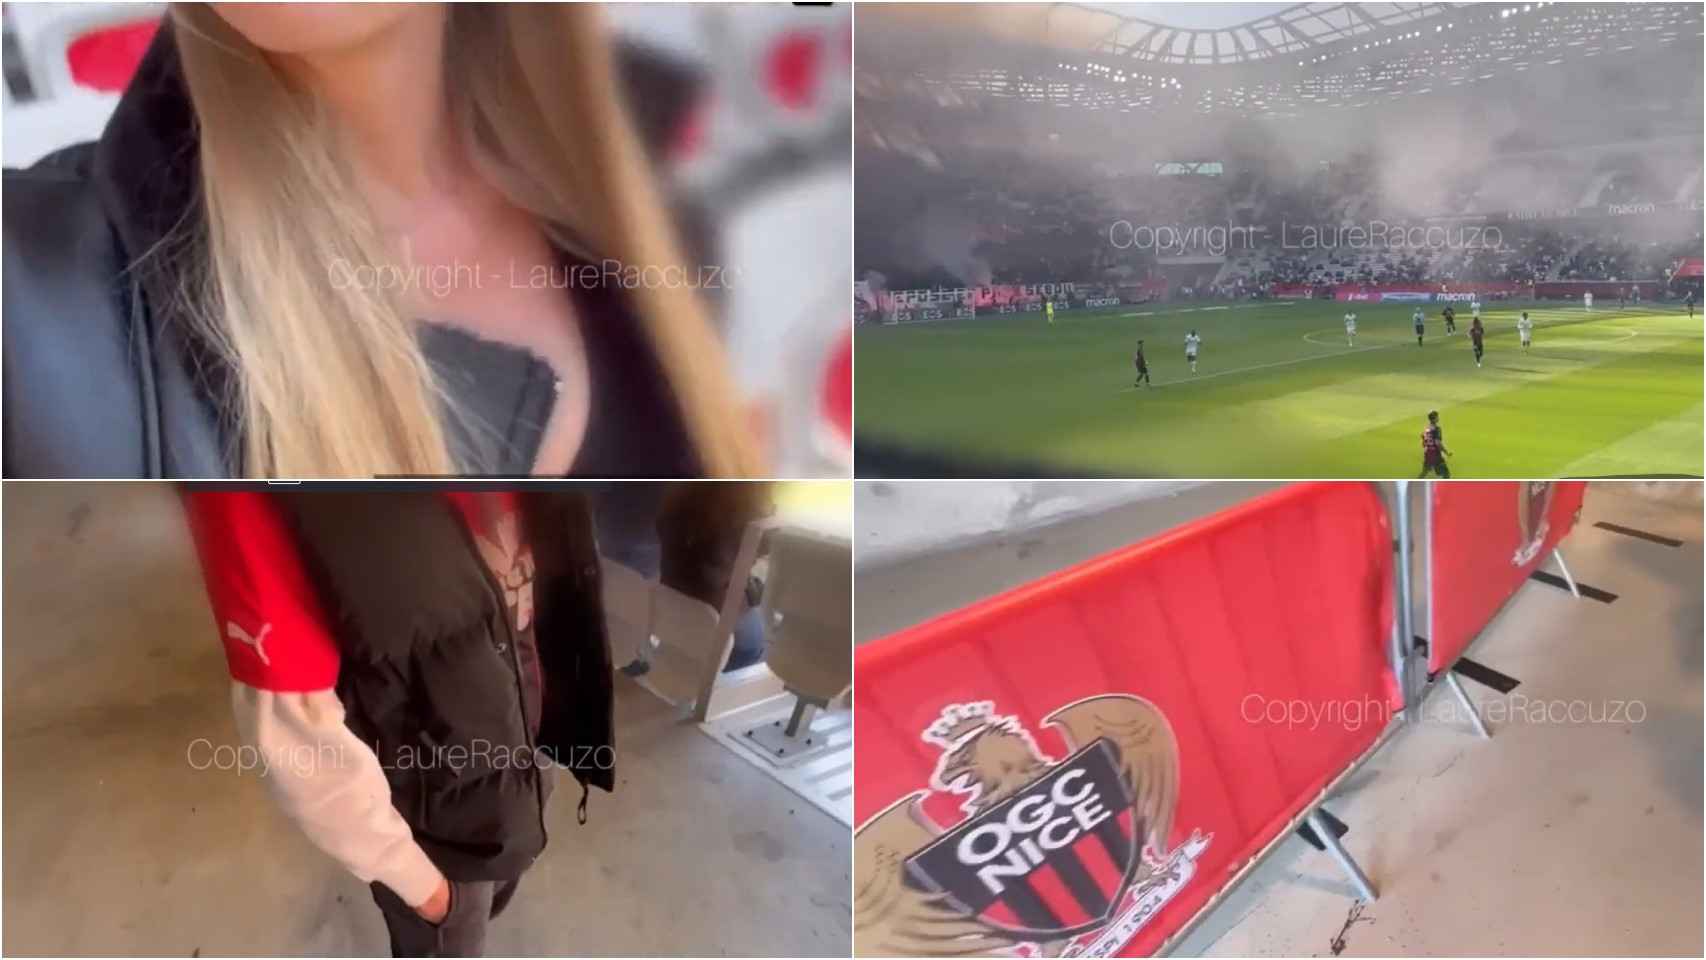 Escándalo en Francia el Niza denuncia la grabación de un vídeo porno en su estadio en pleno partido Foto foto foto